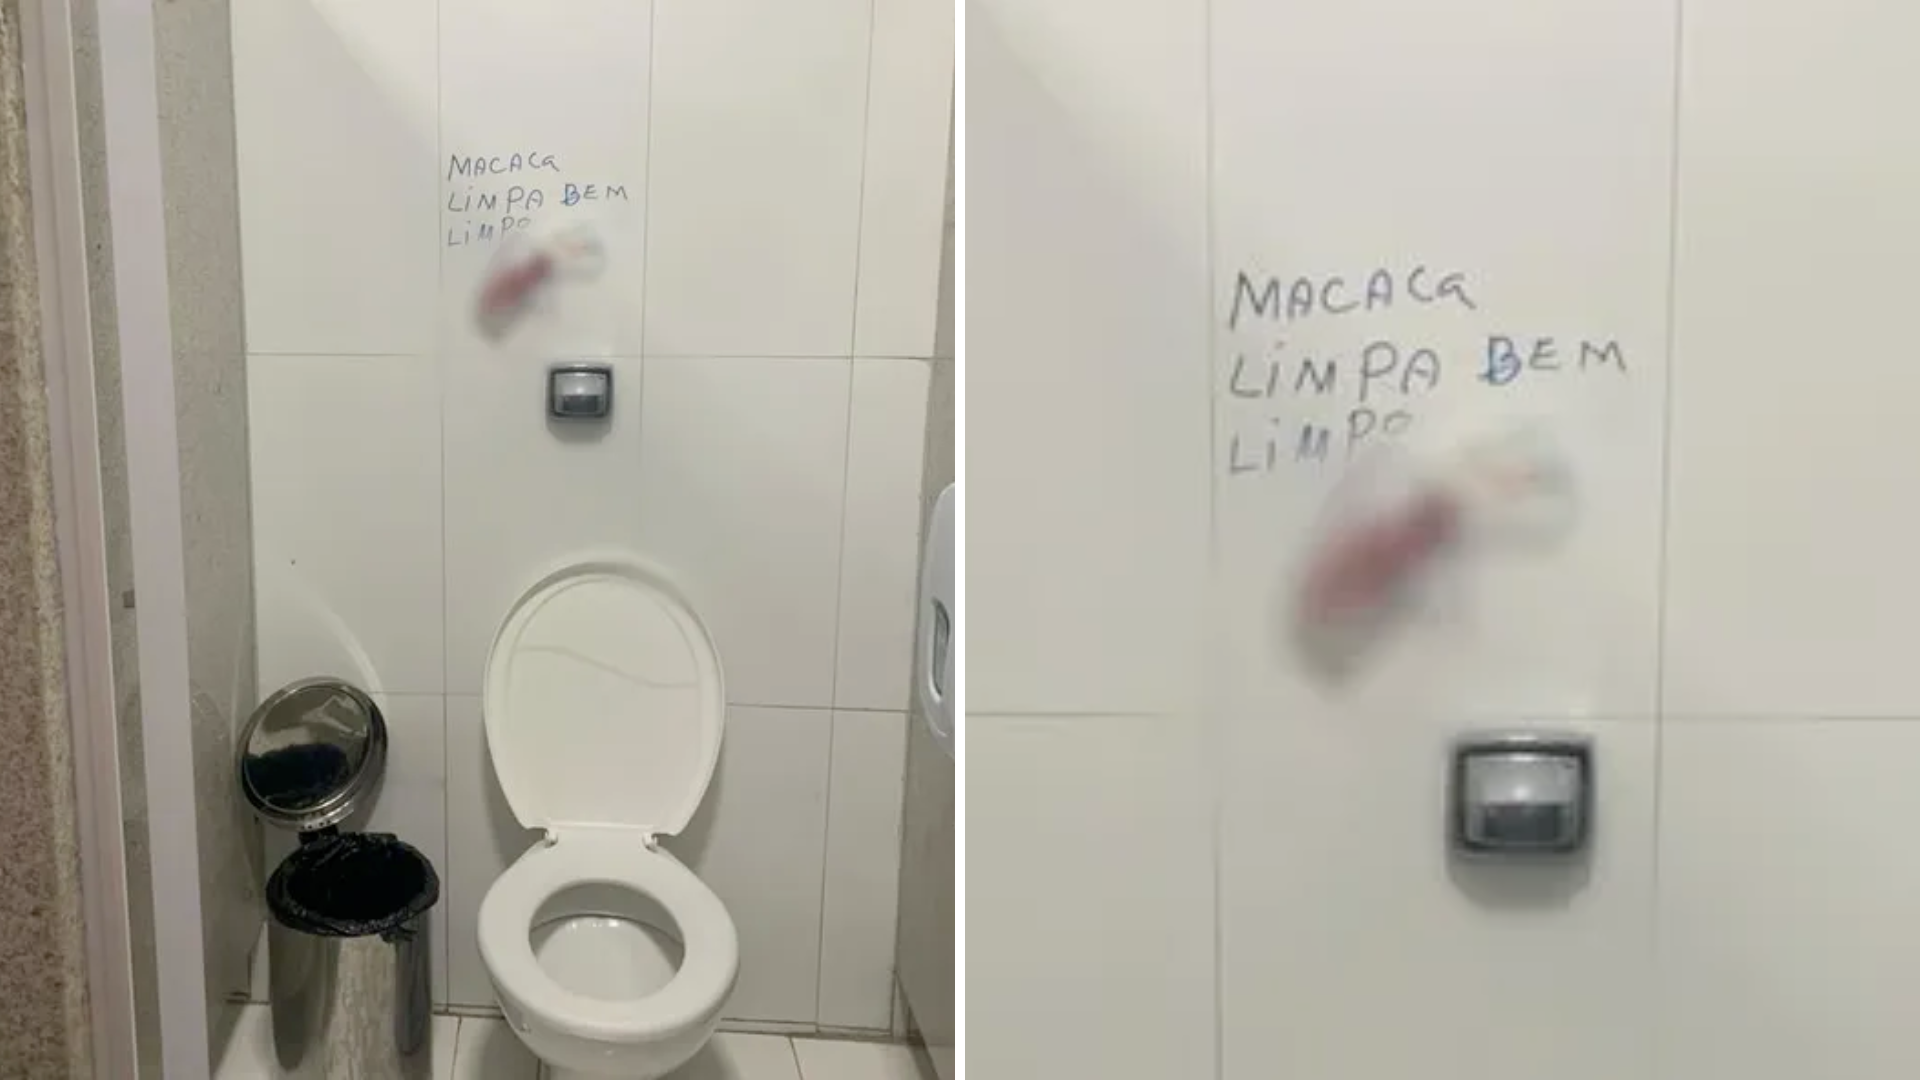 ‘Macaca, limpa bem limpo’ | Frase  racista é escrita ao lado de absorvente usado em banheiro na Universidade de Vassouras